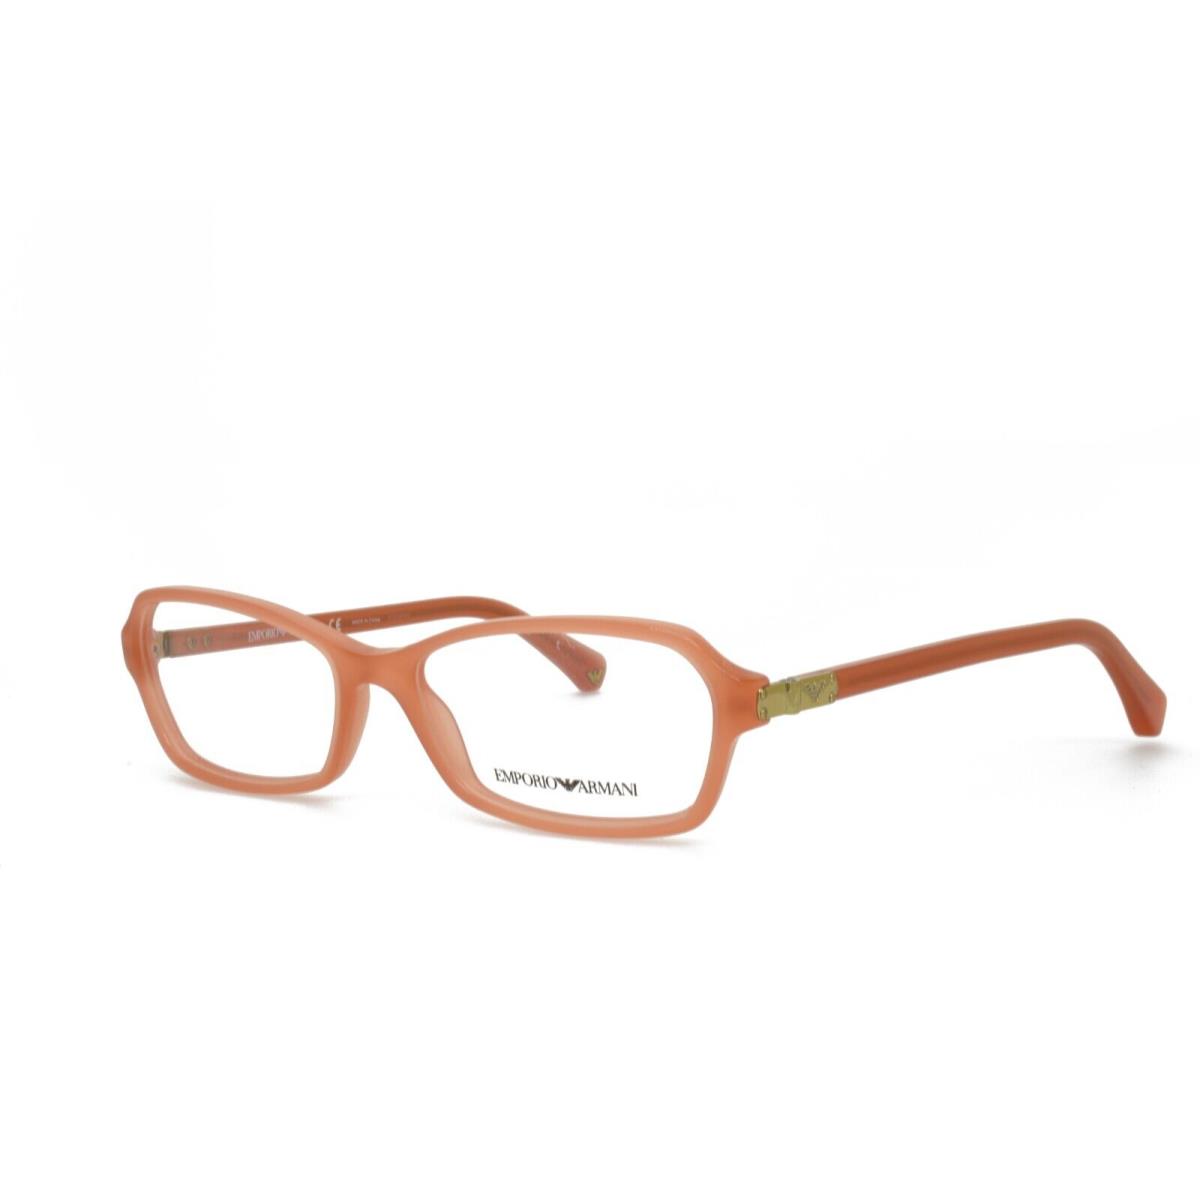 Emporio Armani 3009 5083 54-16-140 Orange Eyeglasses Frames